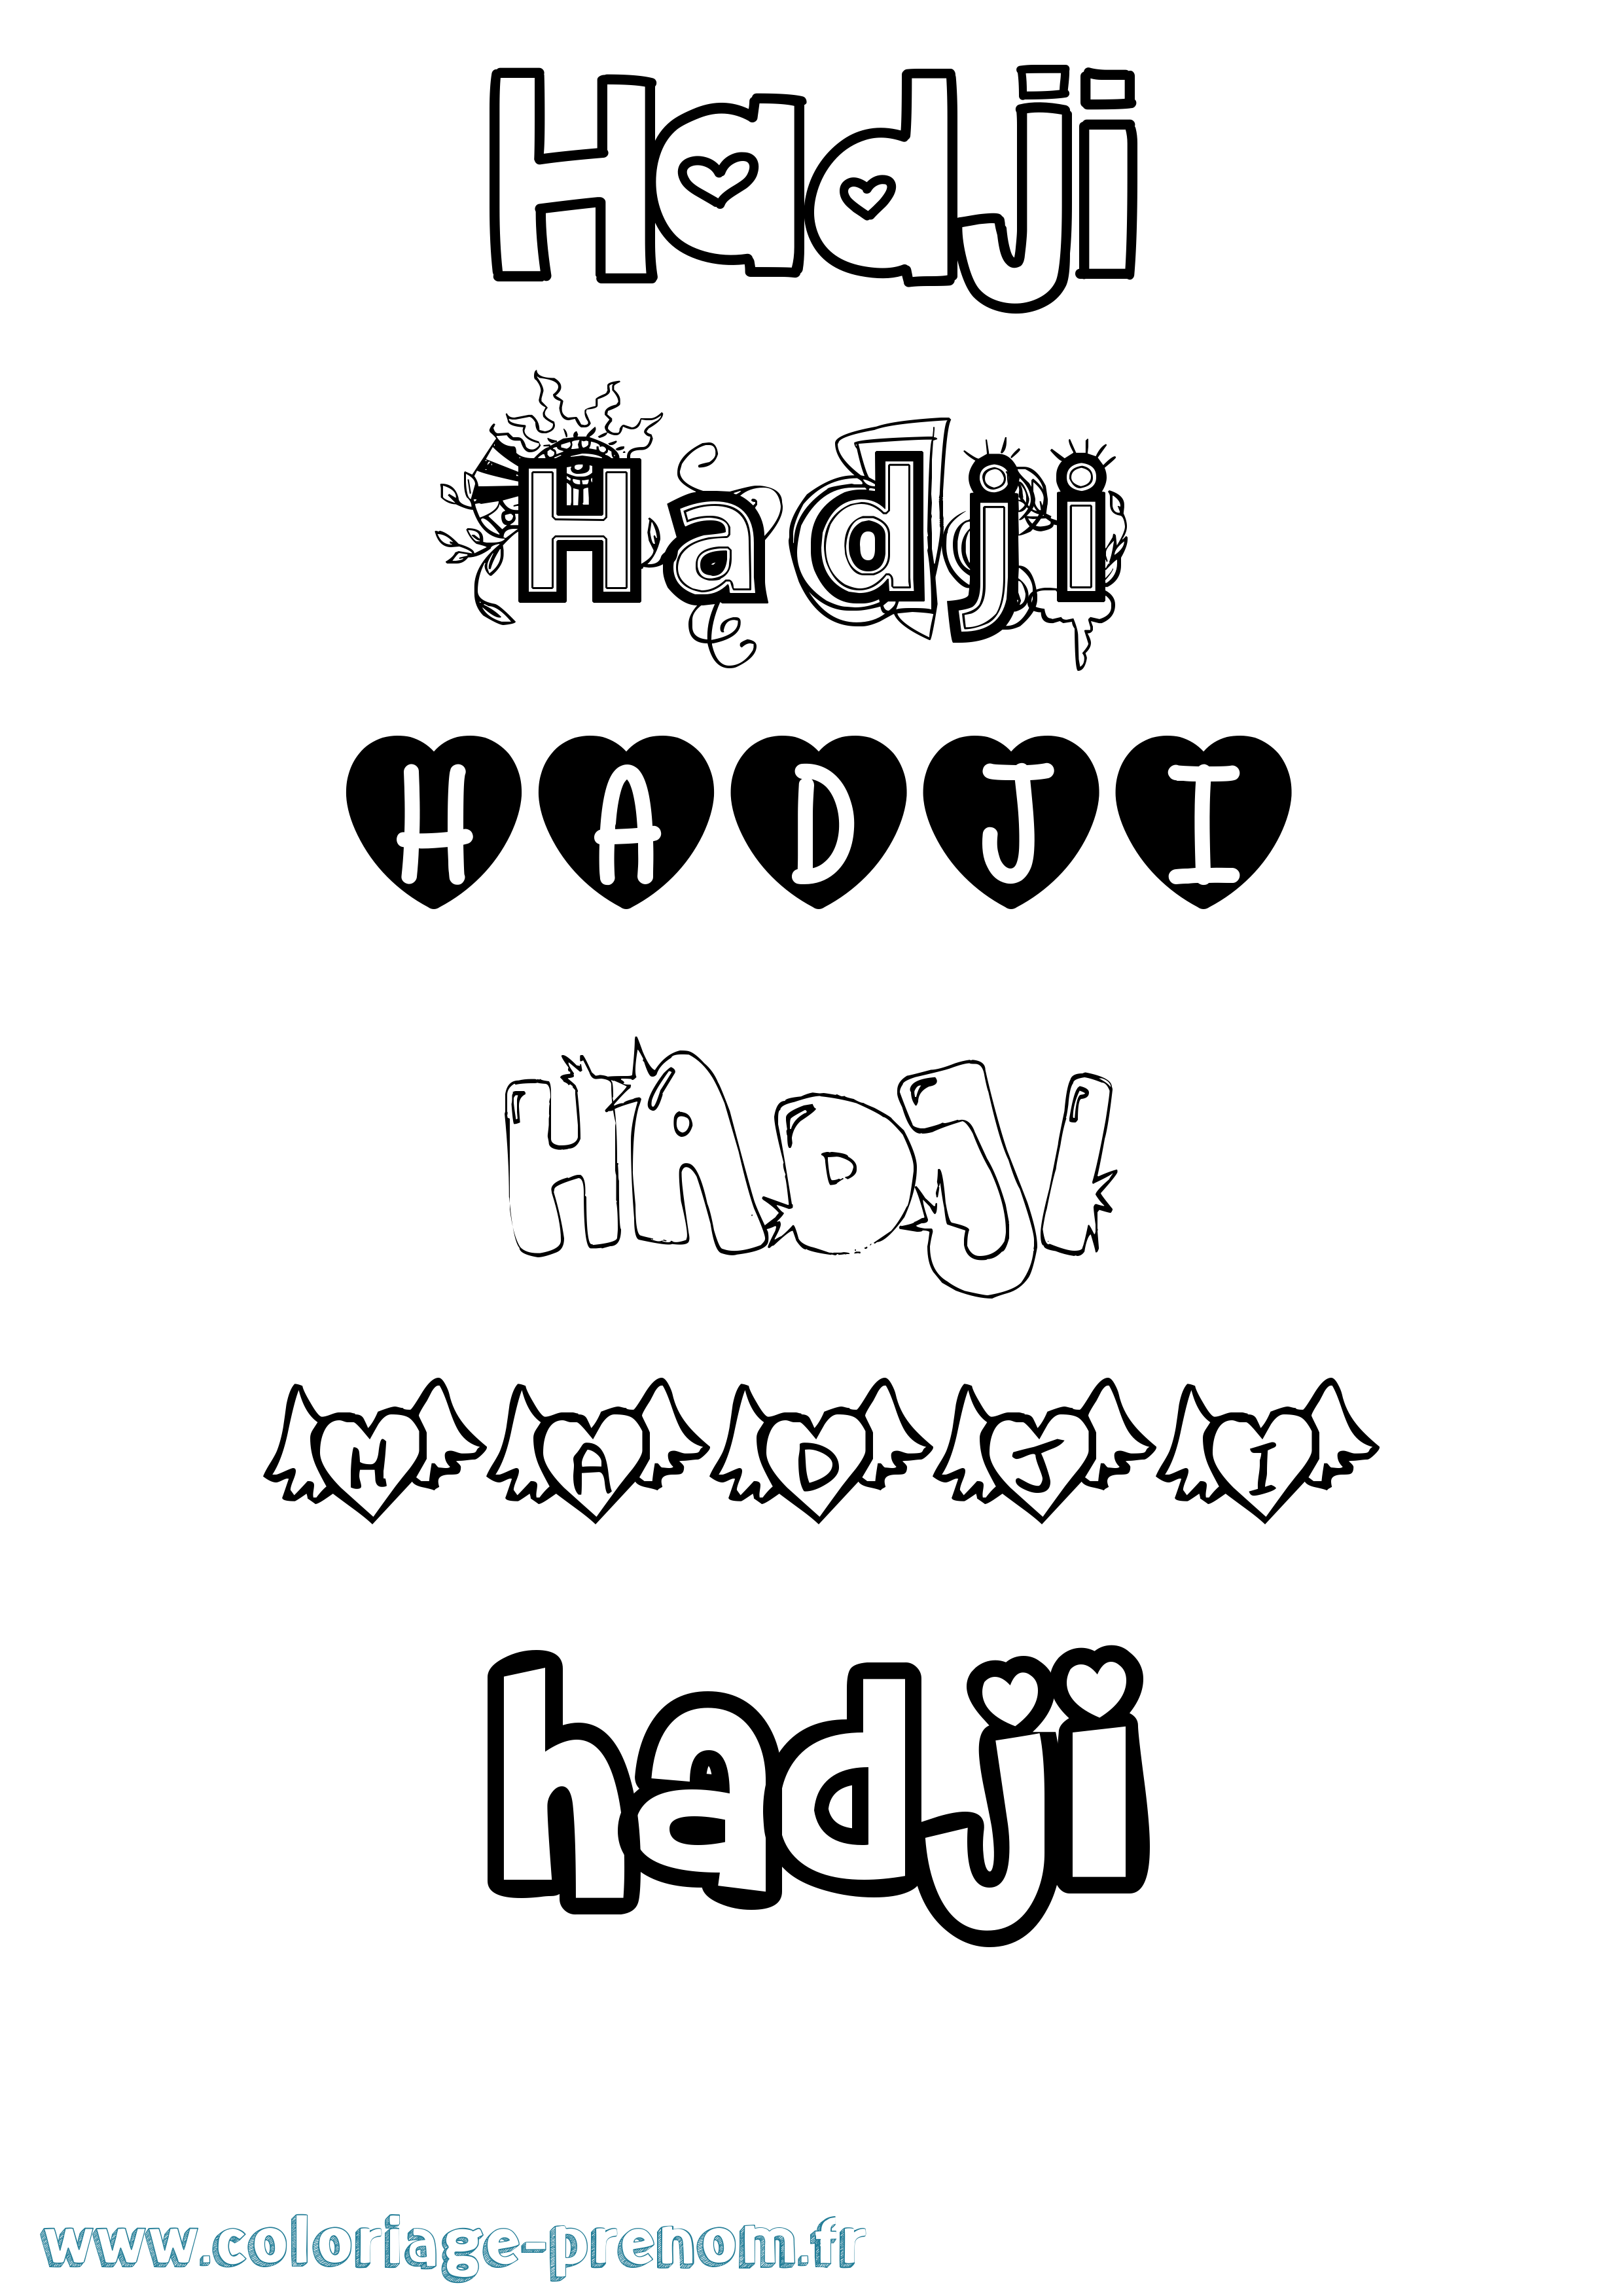 Coloriage prénom Hadji Girly